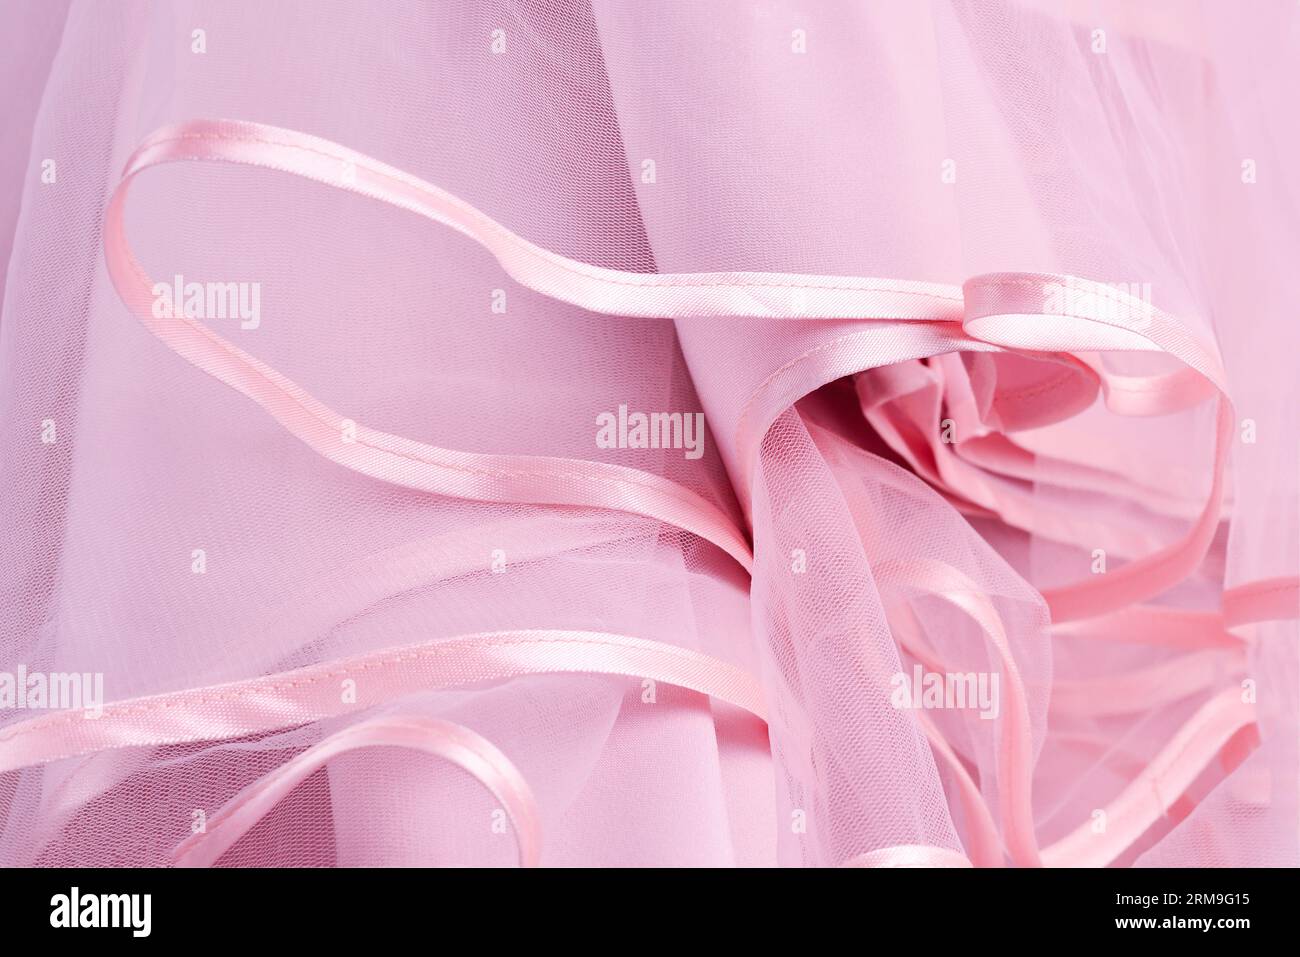 Dettaglio abito da sposa. Abito da sposa rosa frills primo piano. Foto Stock